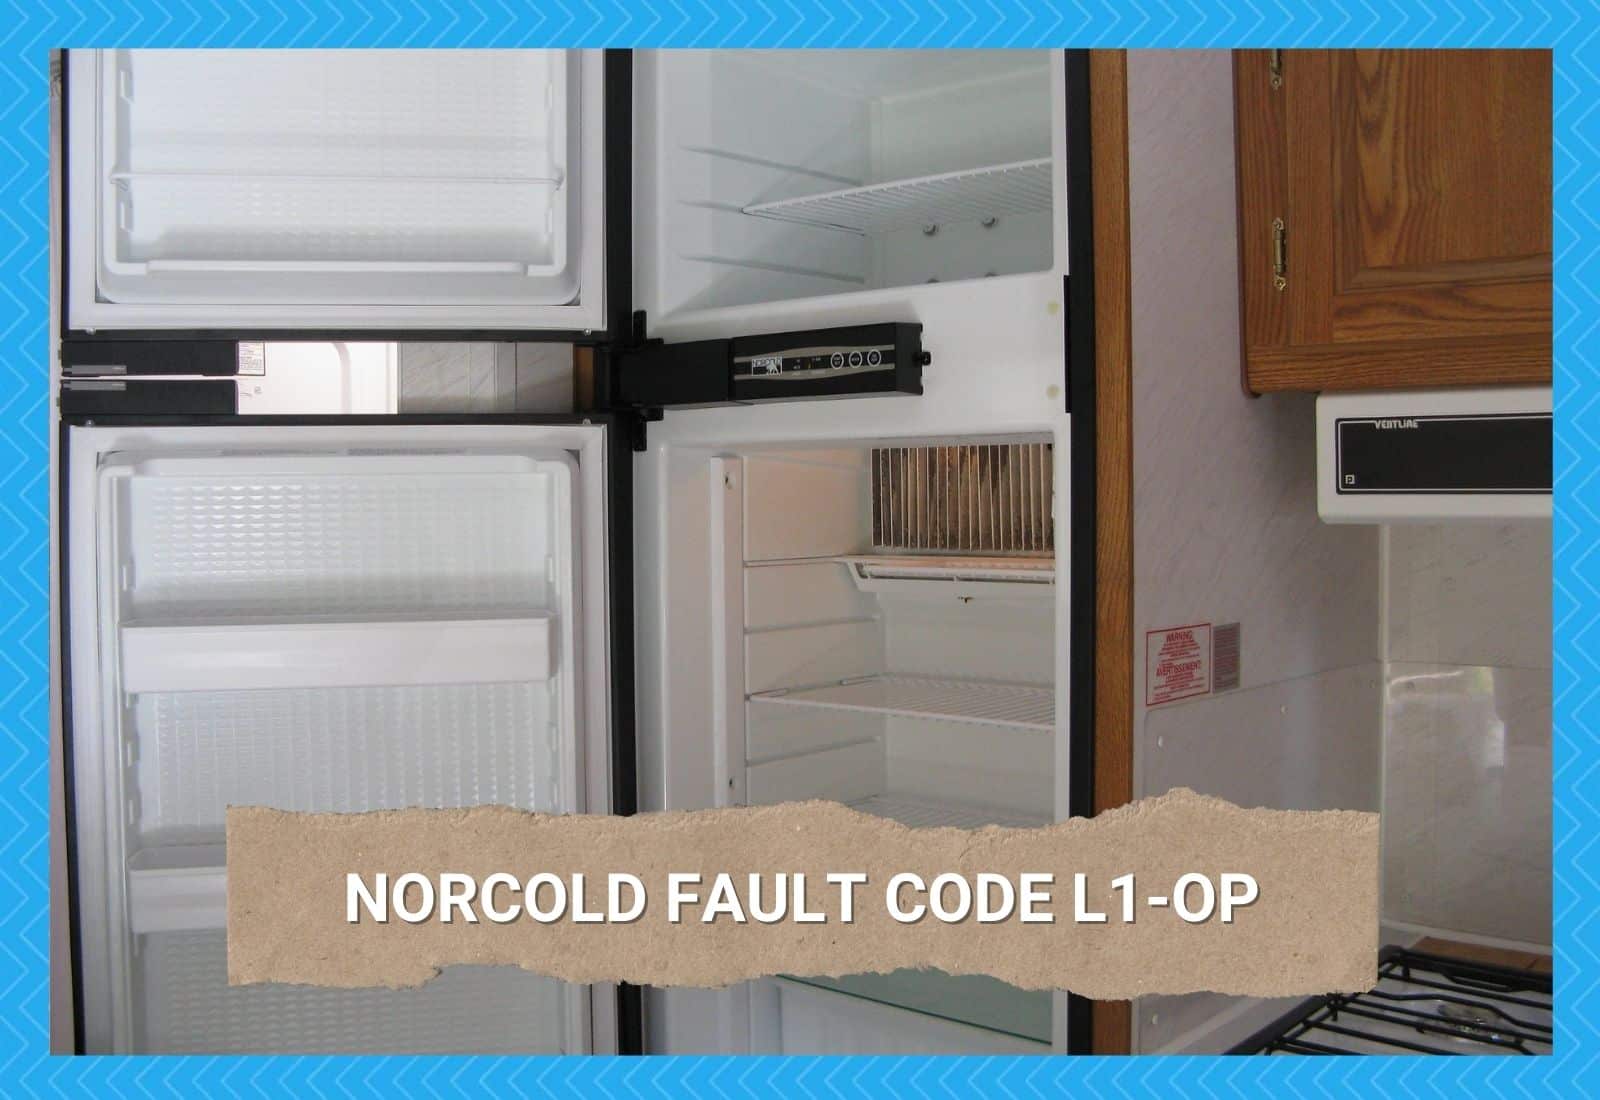 Norcold Fault Code l1-op